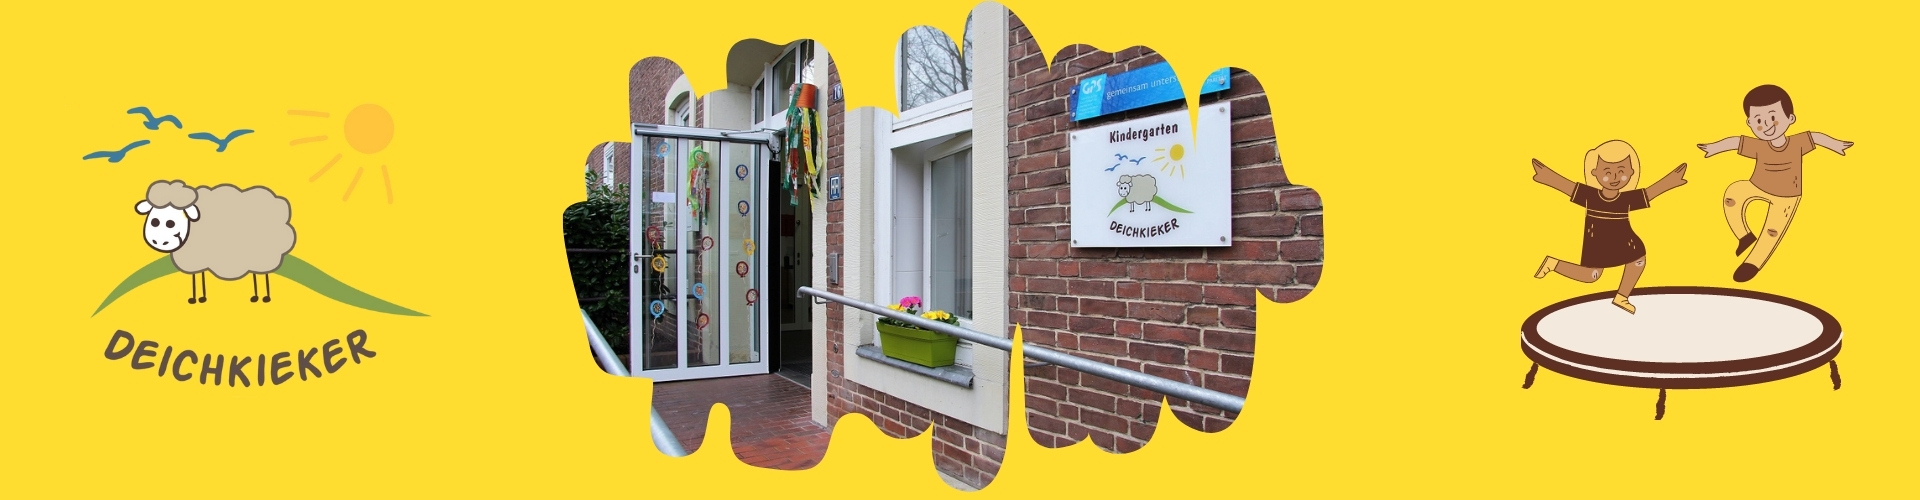 Der Eingang des Kindergarten Deichkieker. Die Eingangstür steht auf. Man sieht ein Geländer, einen Blumenkasten mit Blumen und das Schild des Kindergartens.